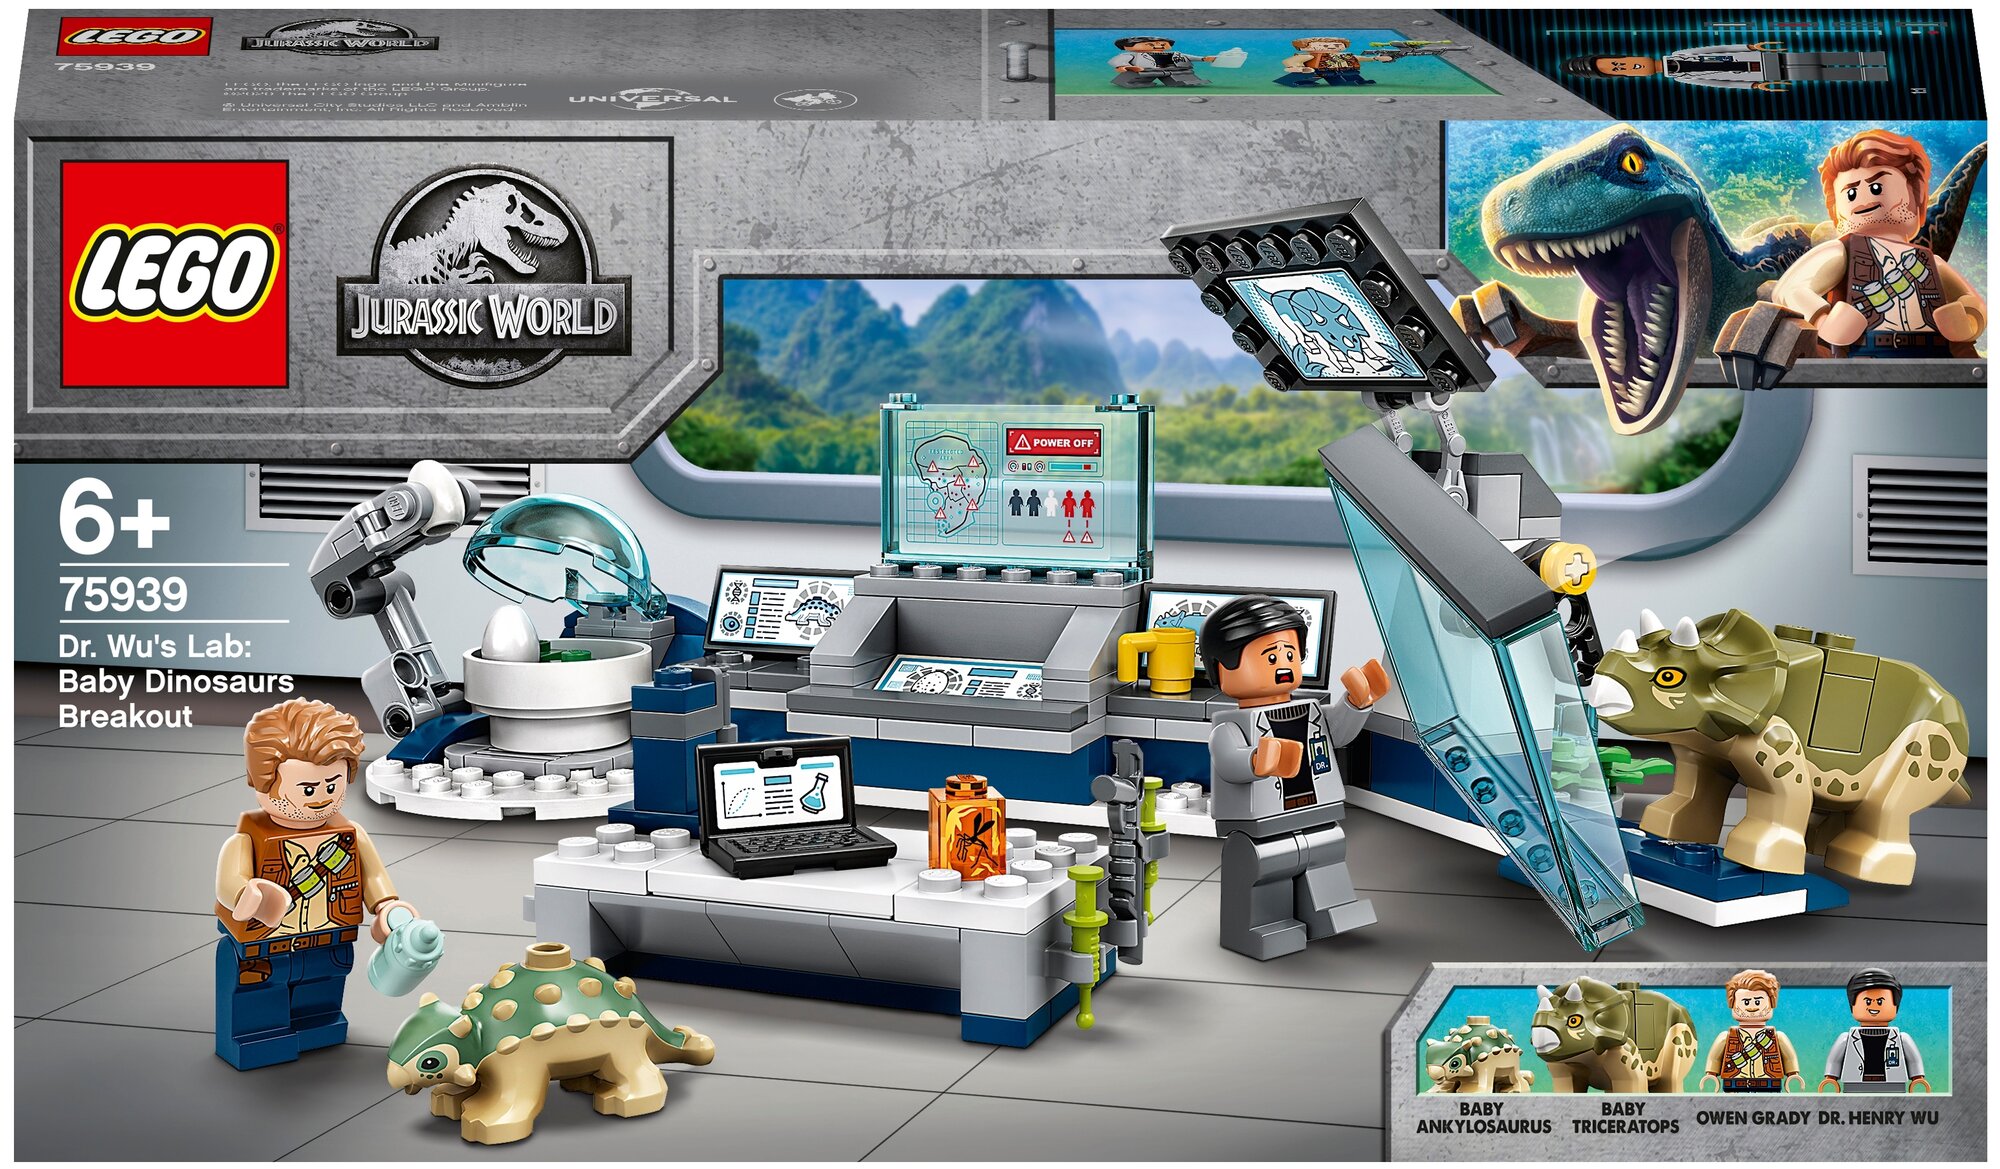 Конструктор LEGO Jurassic World Лаборатория доктора Ву: побег детенышей динозавров, 164 детали (75939) - фото №1